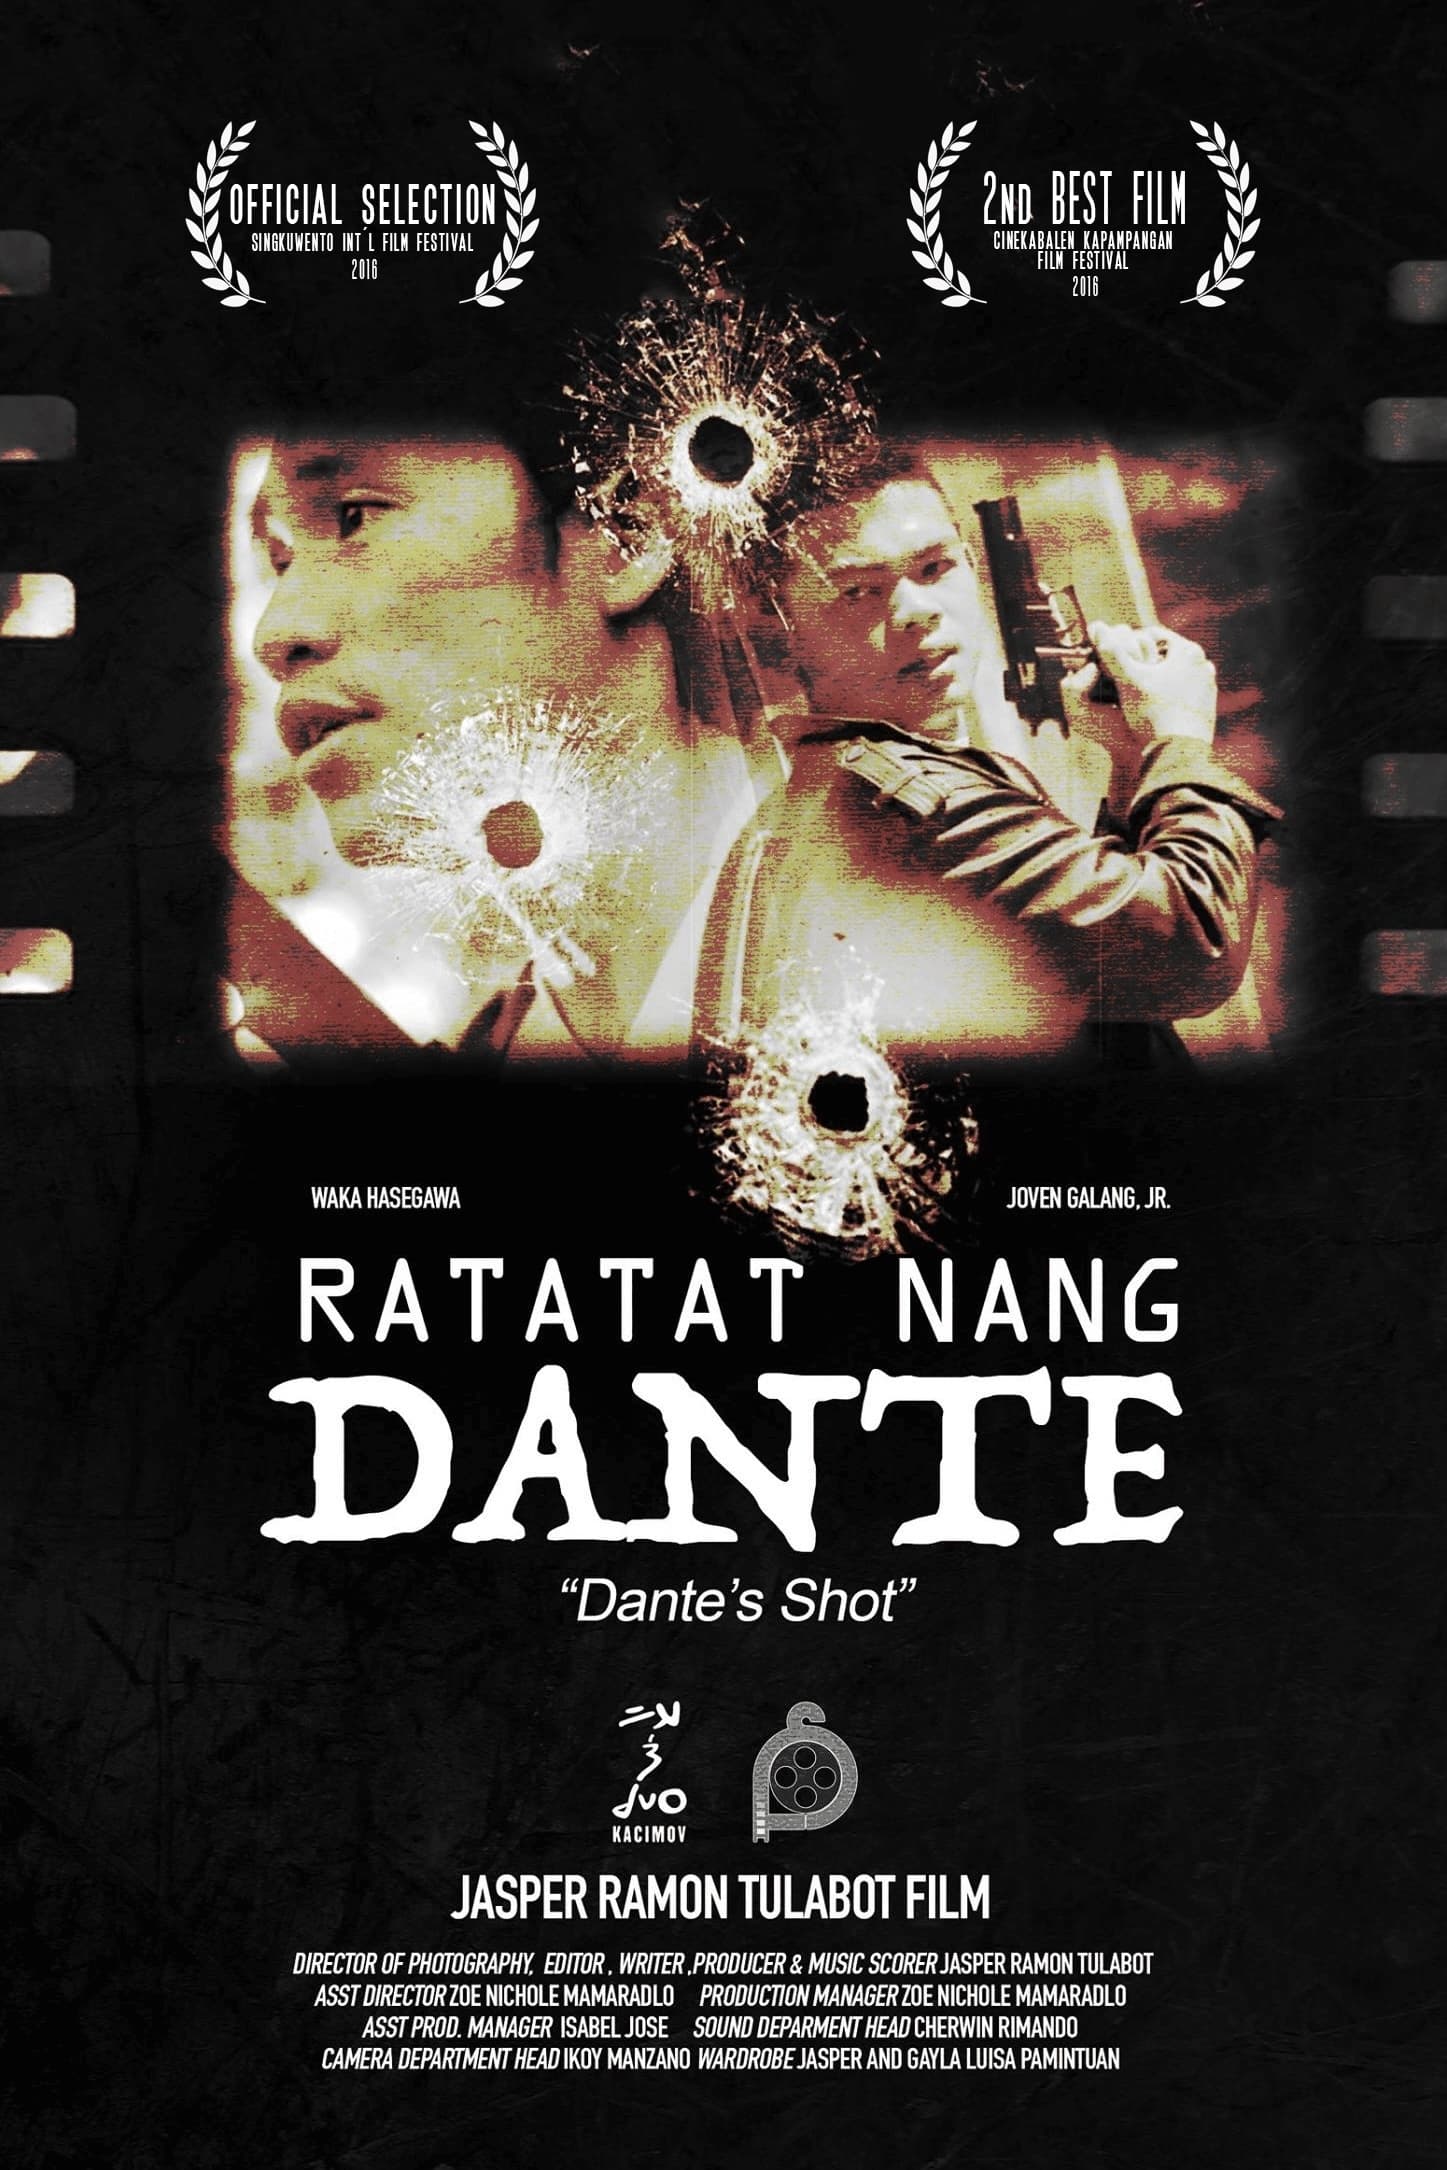 Dante's Shot